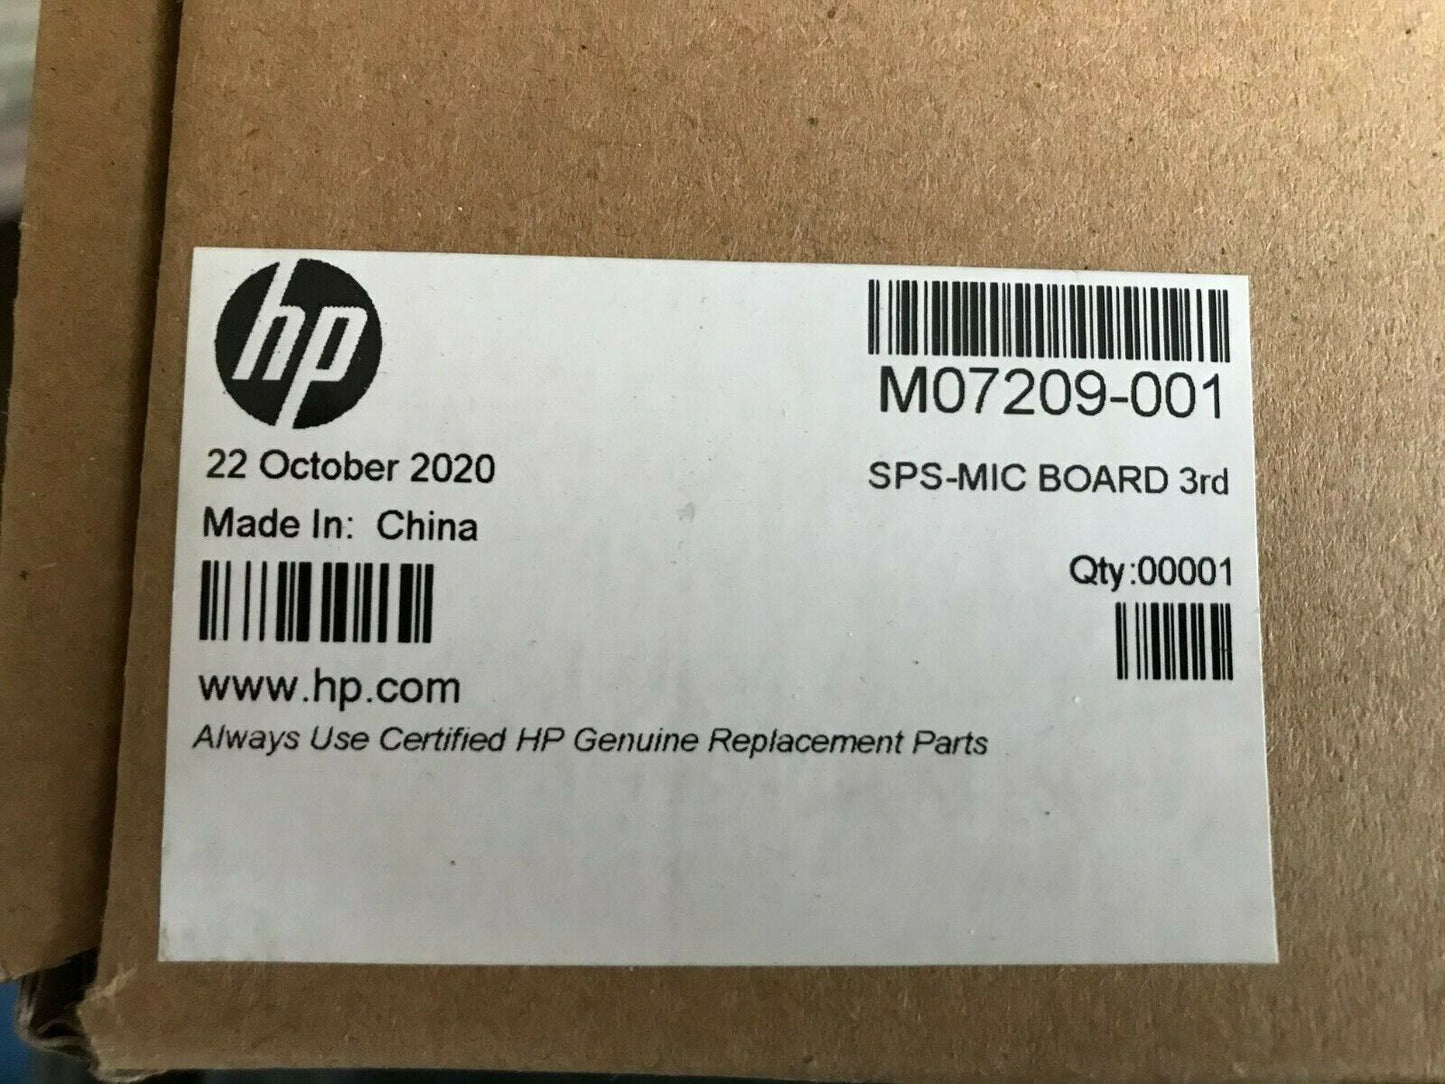 NEW GENUINE HP M07209-001 MIC BOARD 3RD ELITEBOOK 830 835 840 845 850 G7